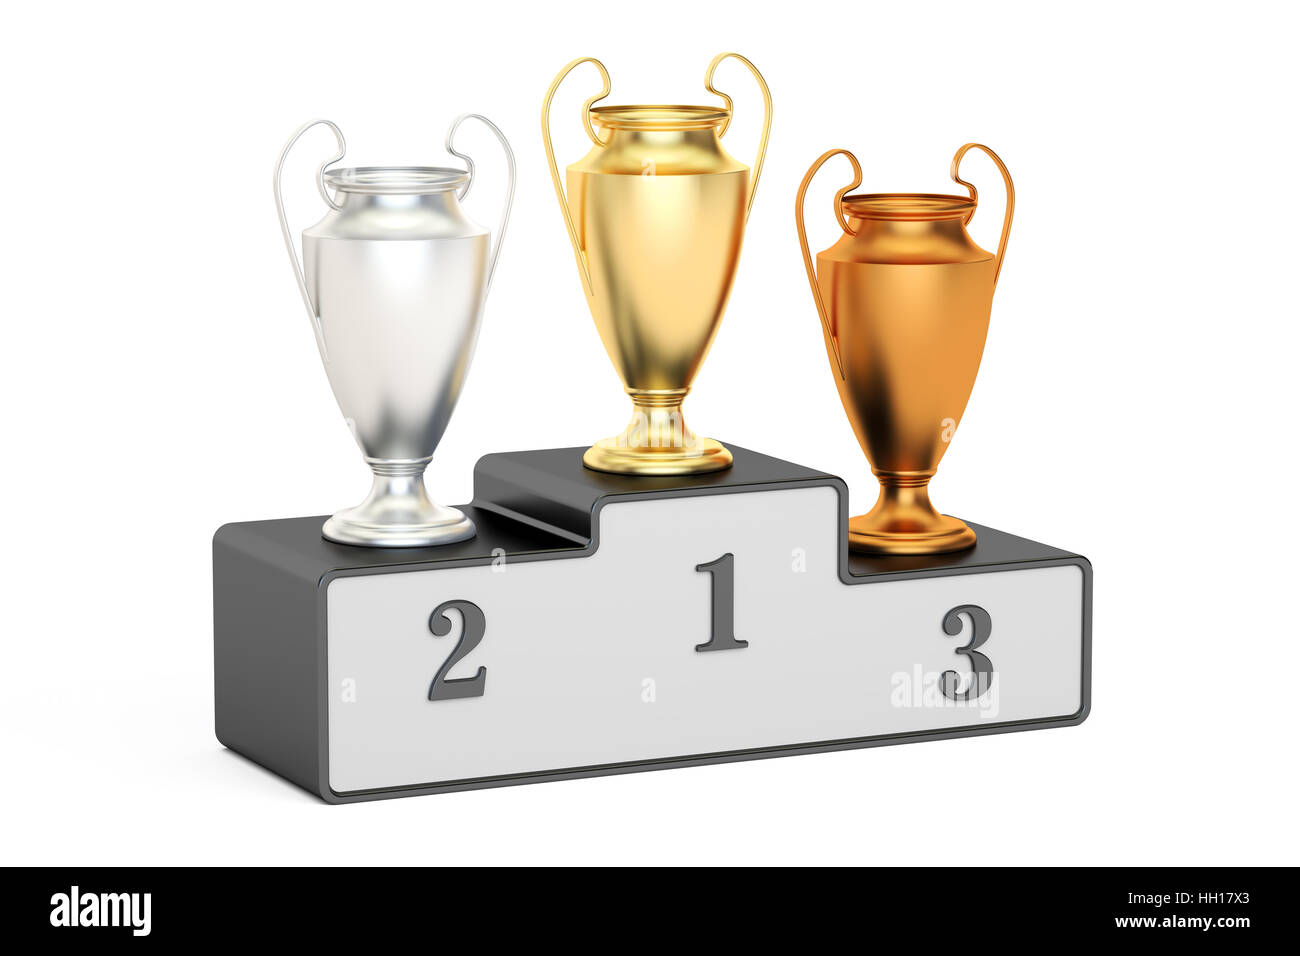 Oro, Argento e bronzo trofeo coppe sul piedistallo nero, rendering 3D isolati su sfondo bianco Foto Stock